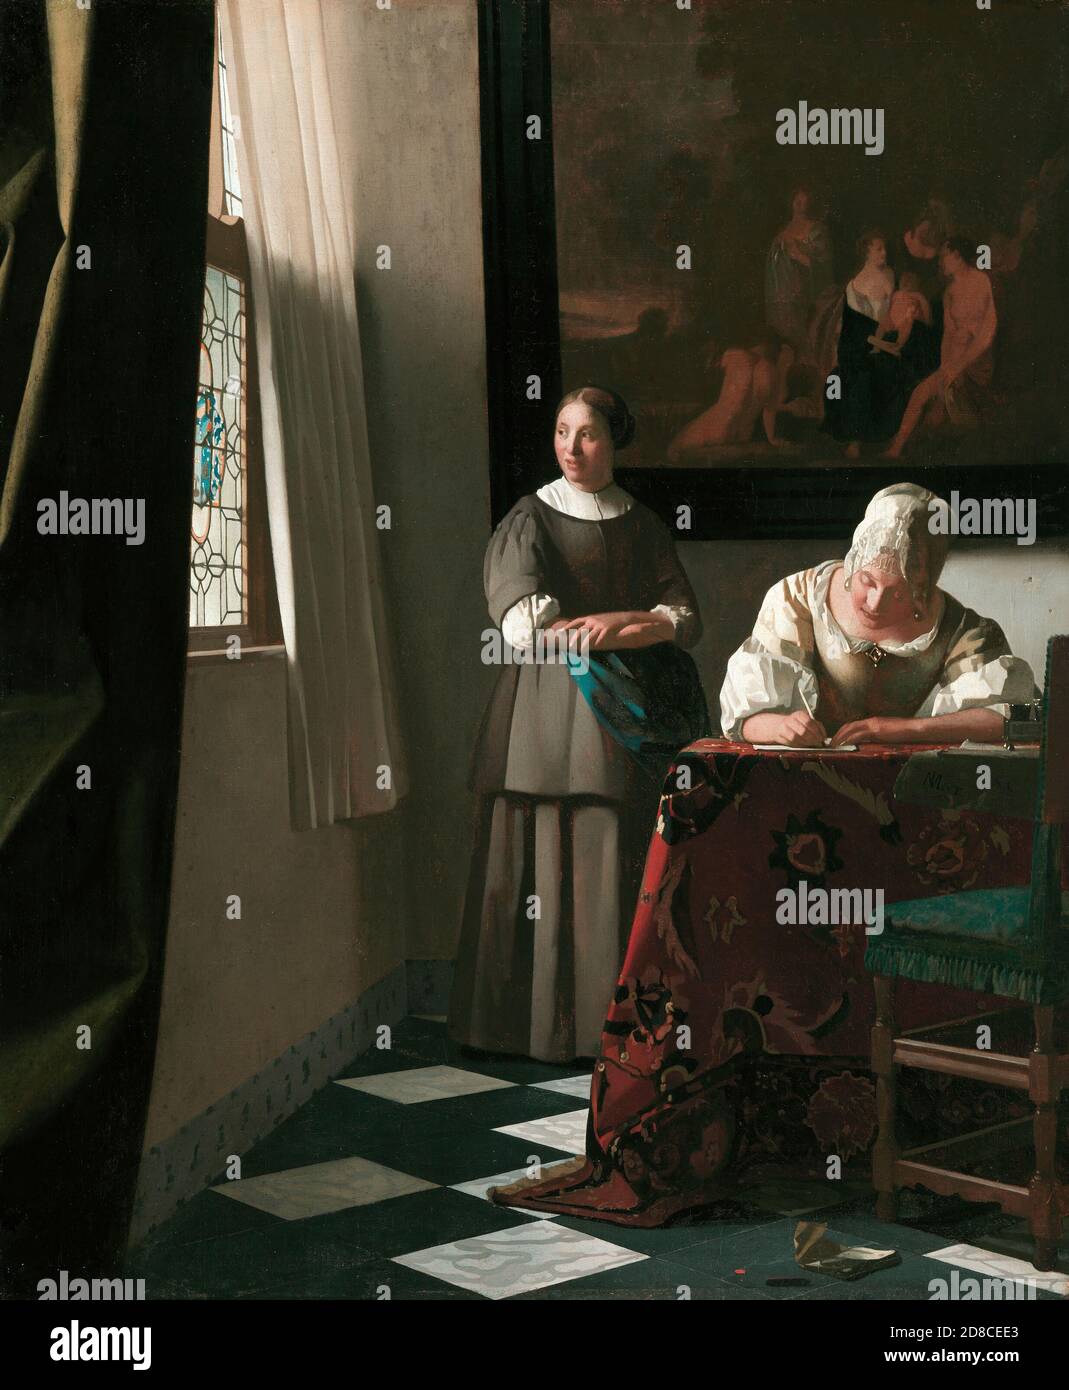 Titel: Dame, die mit ihrer Jungfrau einen Brief schreibt Ersteller: Johannes Vermeer Datum: ca.1670 Medium: Öl auf Leinwand Maße: 72.2 x 59.5 cm Ort: National Gallery of Ireland, Dublin Stockfoto